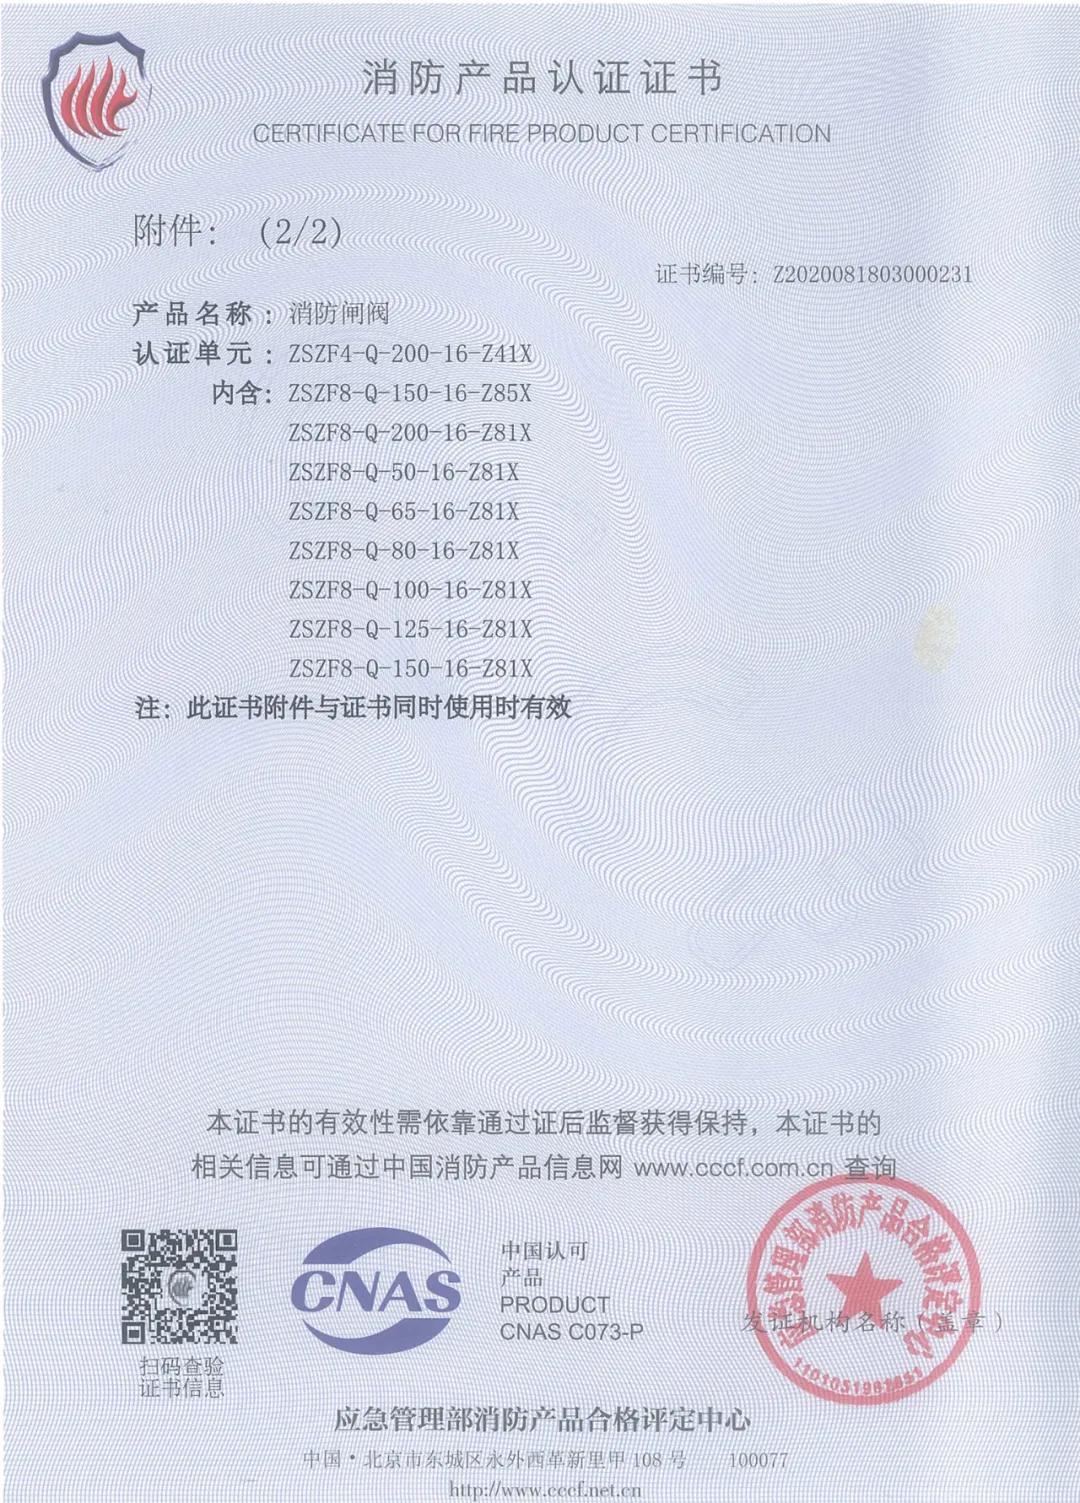 博纳斯威消防阀门产品获得3C消防产品认证证书